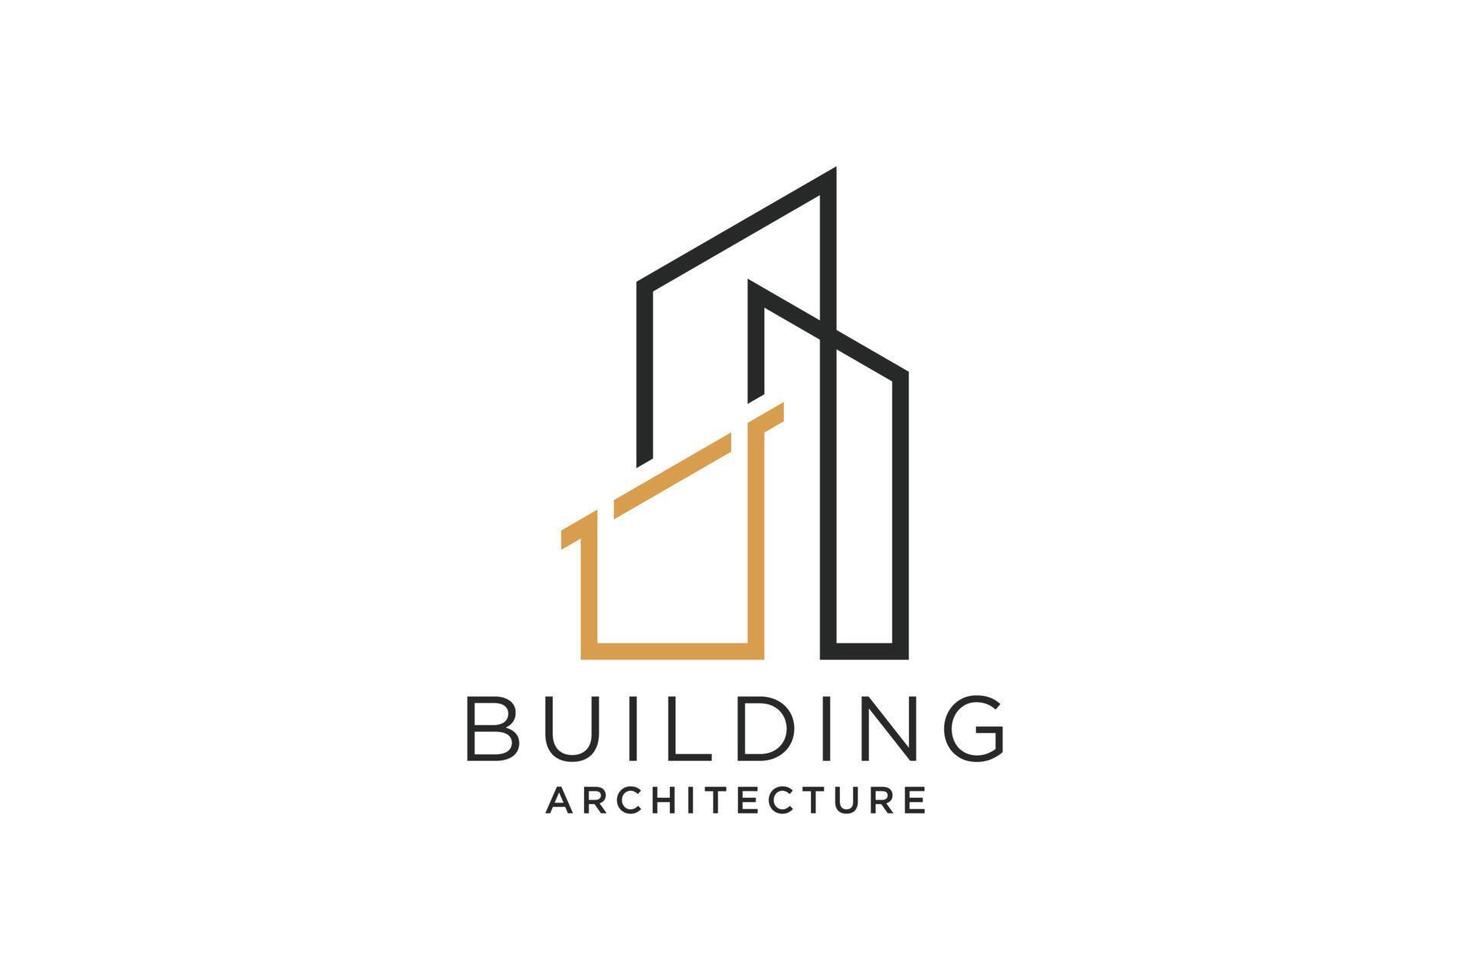 lettre u pour le logo de remodelage immobilier. construction architecture bâtiment élément de modèle de conception de logo. vecteur